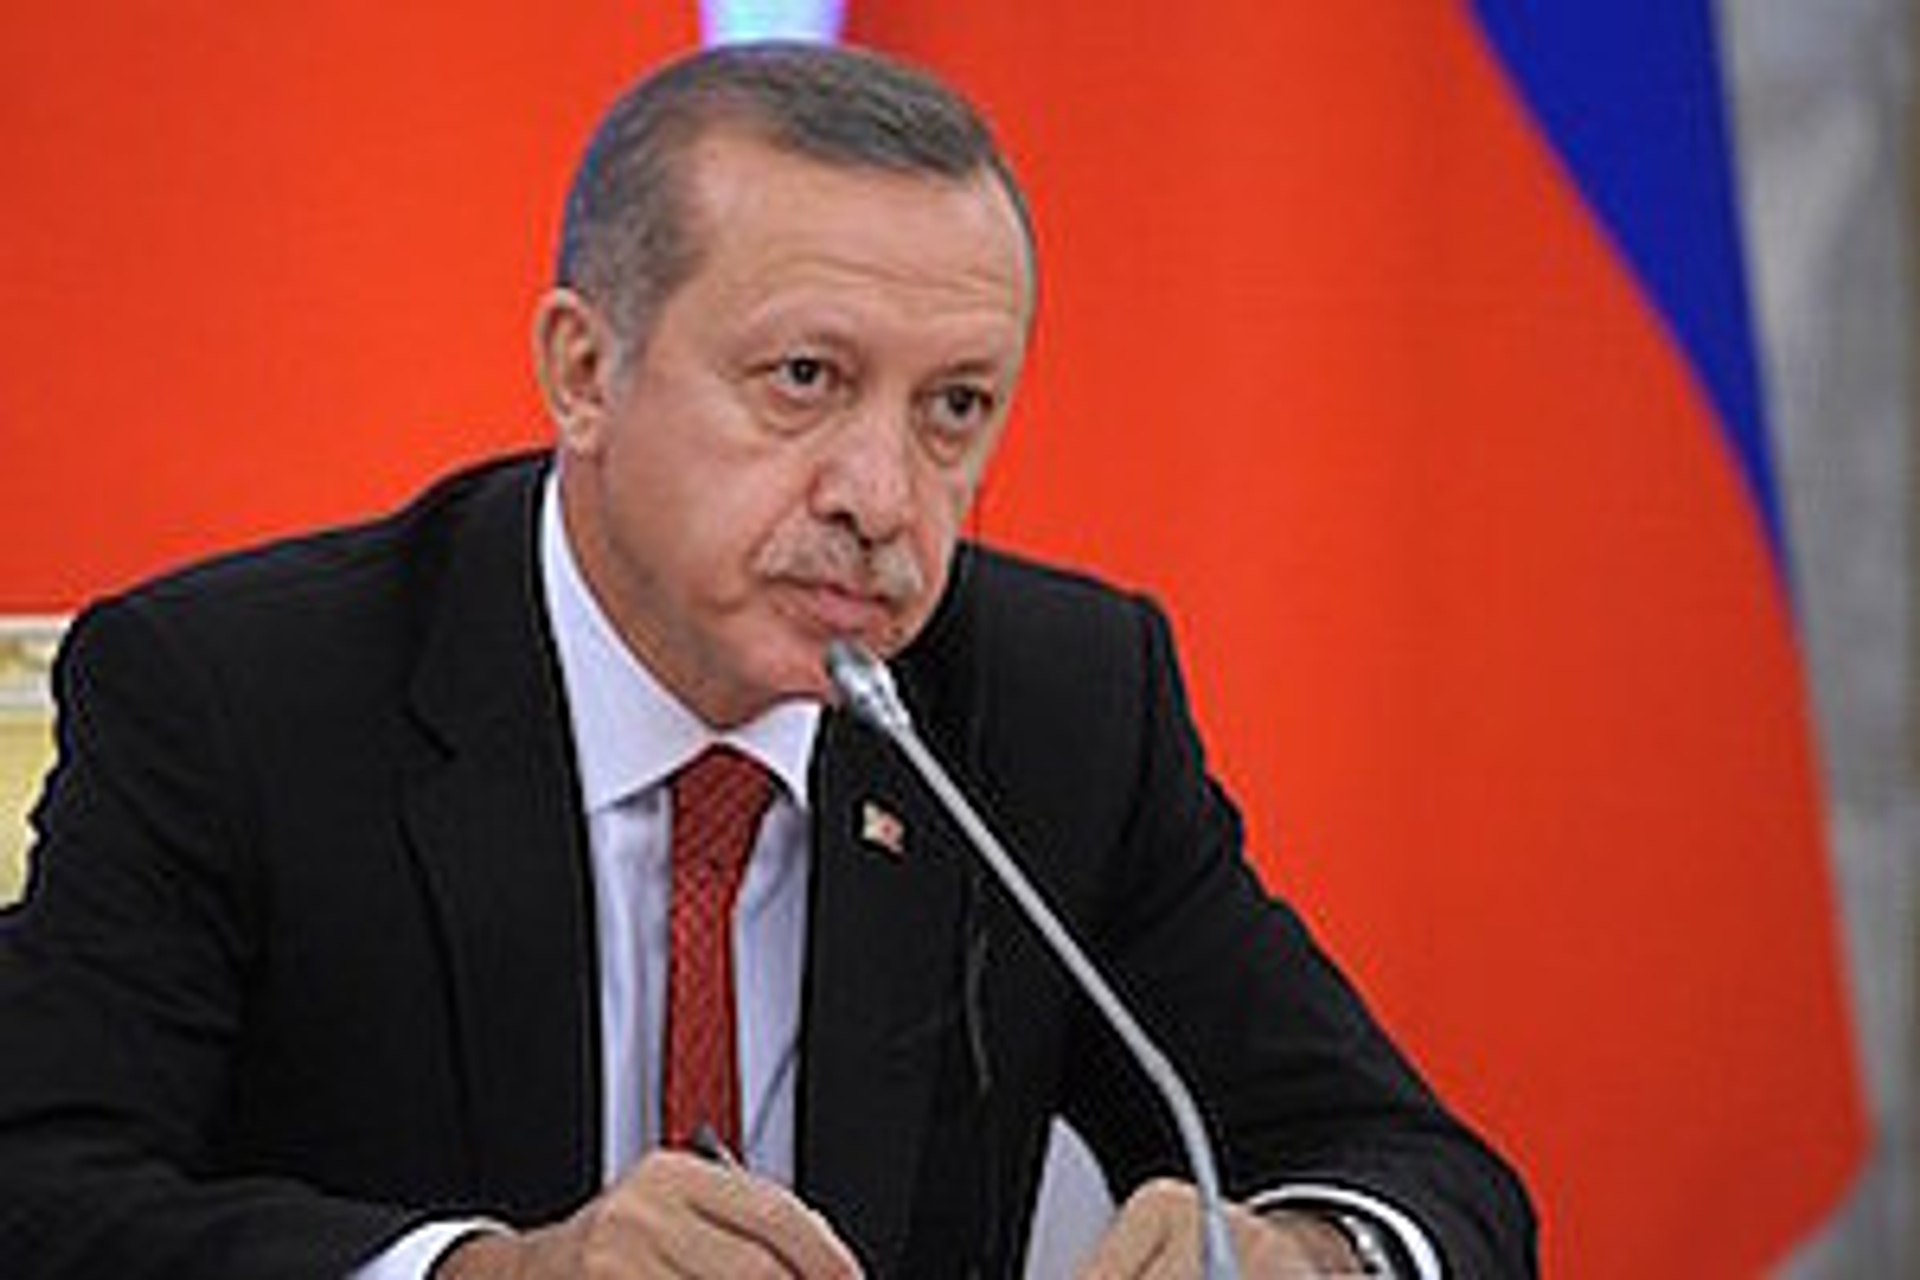 RTEmagicC_erdogan_verliest_300.jpeg